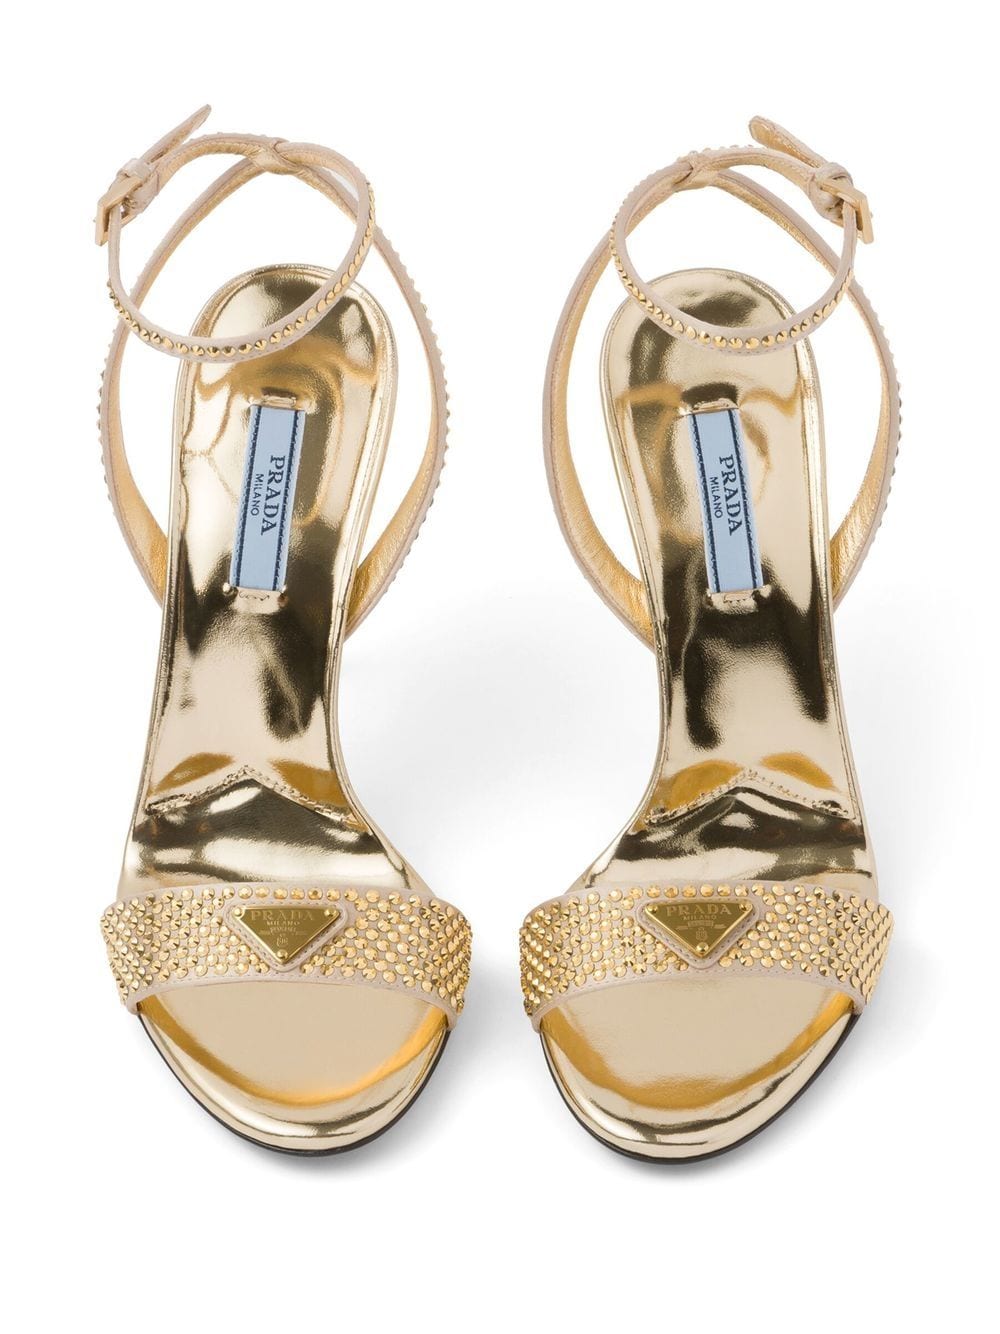 Crystal-embellished satin sandals